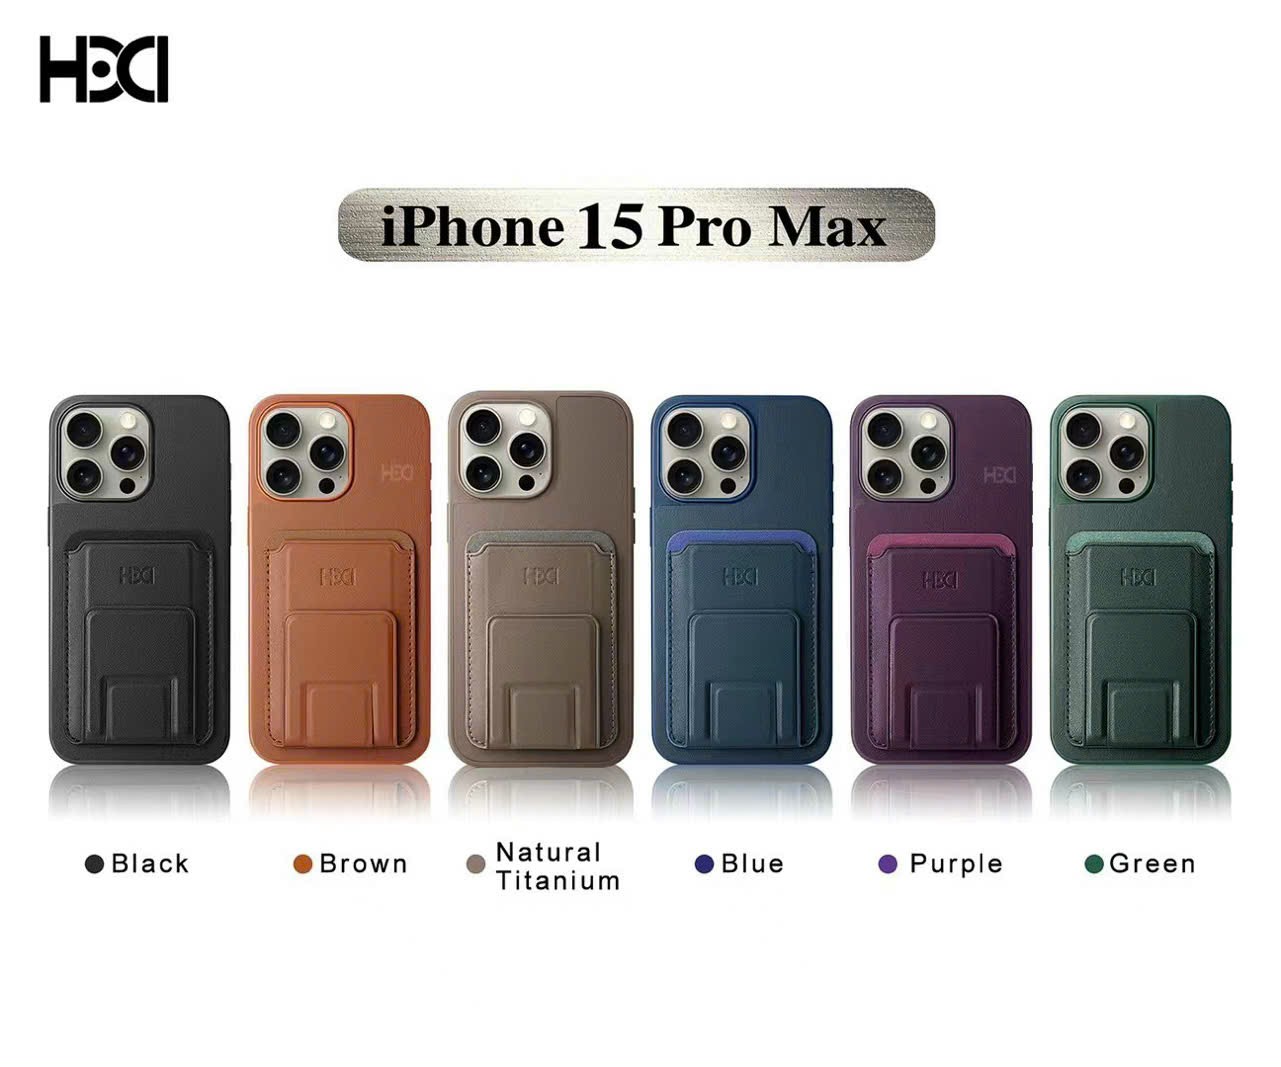 Op Lung Da Iphone 15 Pro Max Hdd Produce Da Nangco Ngan Dung The Ke Chong Lung (1)